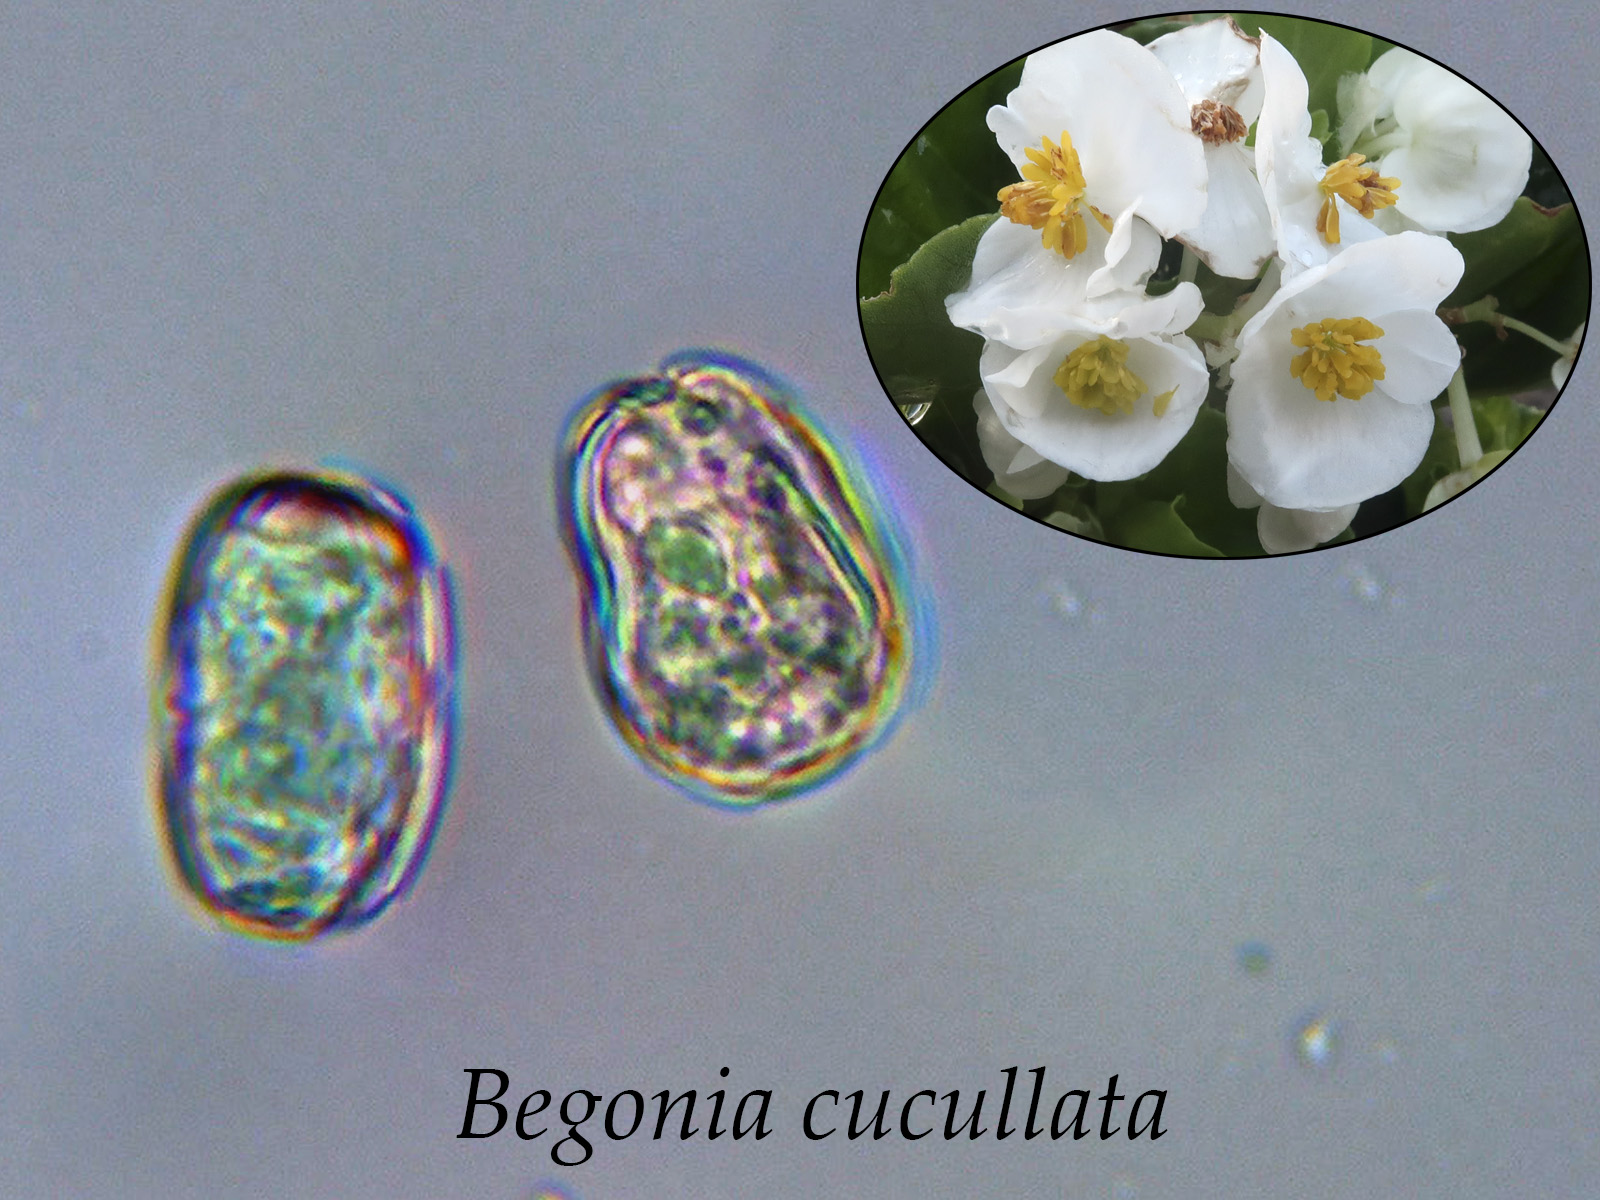 Begoniacucullata.jpg